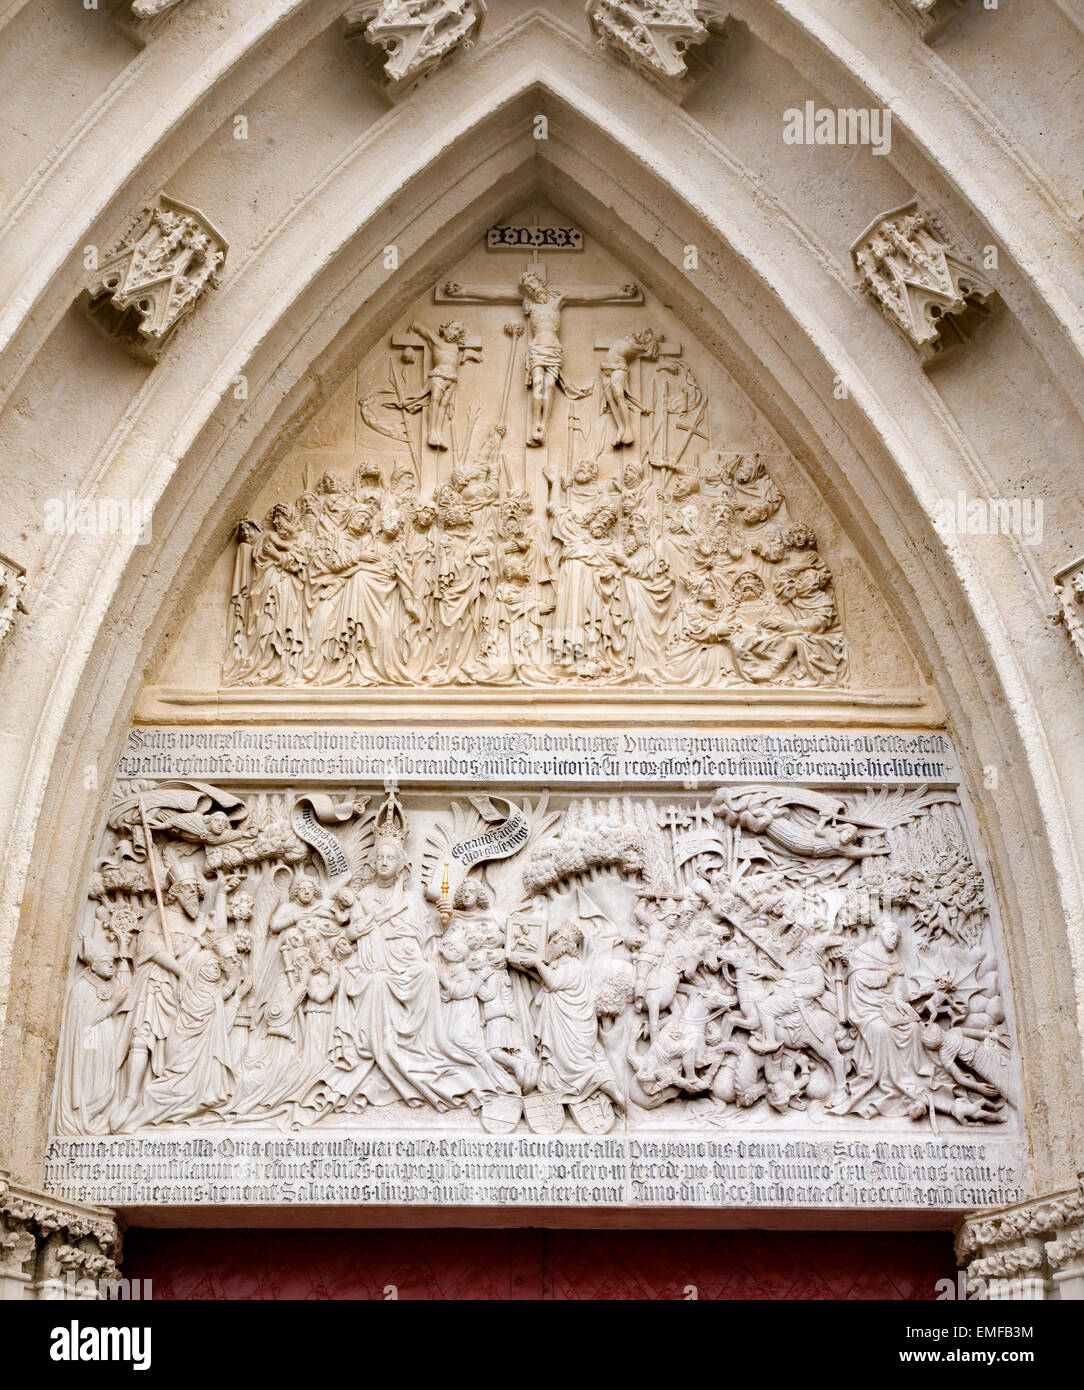 MARIAZELL, Österreich - 4. April 2011: Das Portal der Basilika von der Geburt der Jungfrau Maria mit der Kreuzigung Entlastung Stockfoto